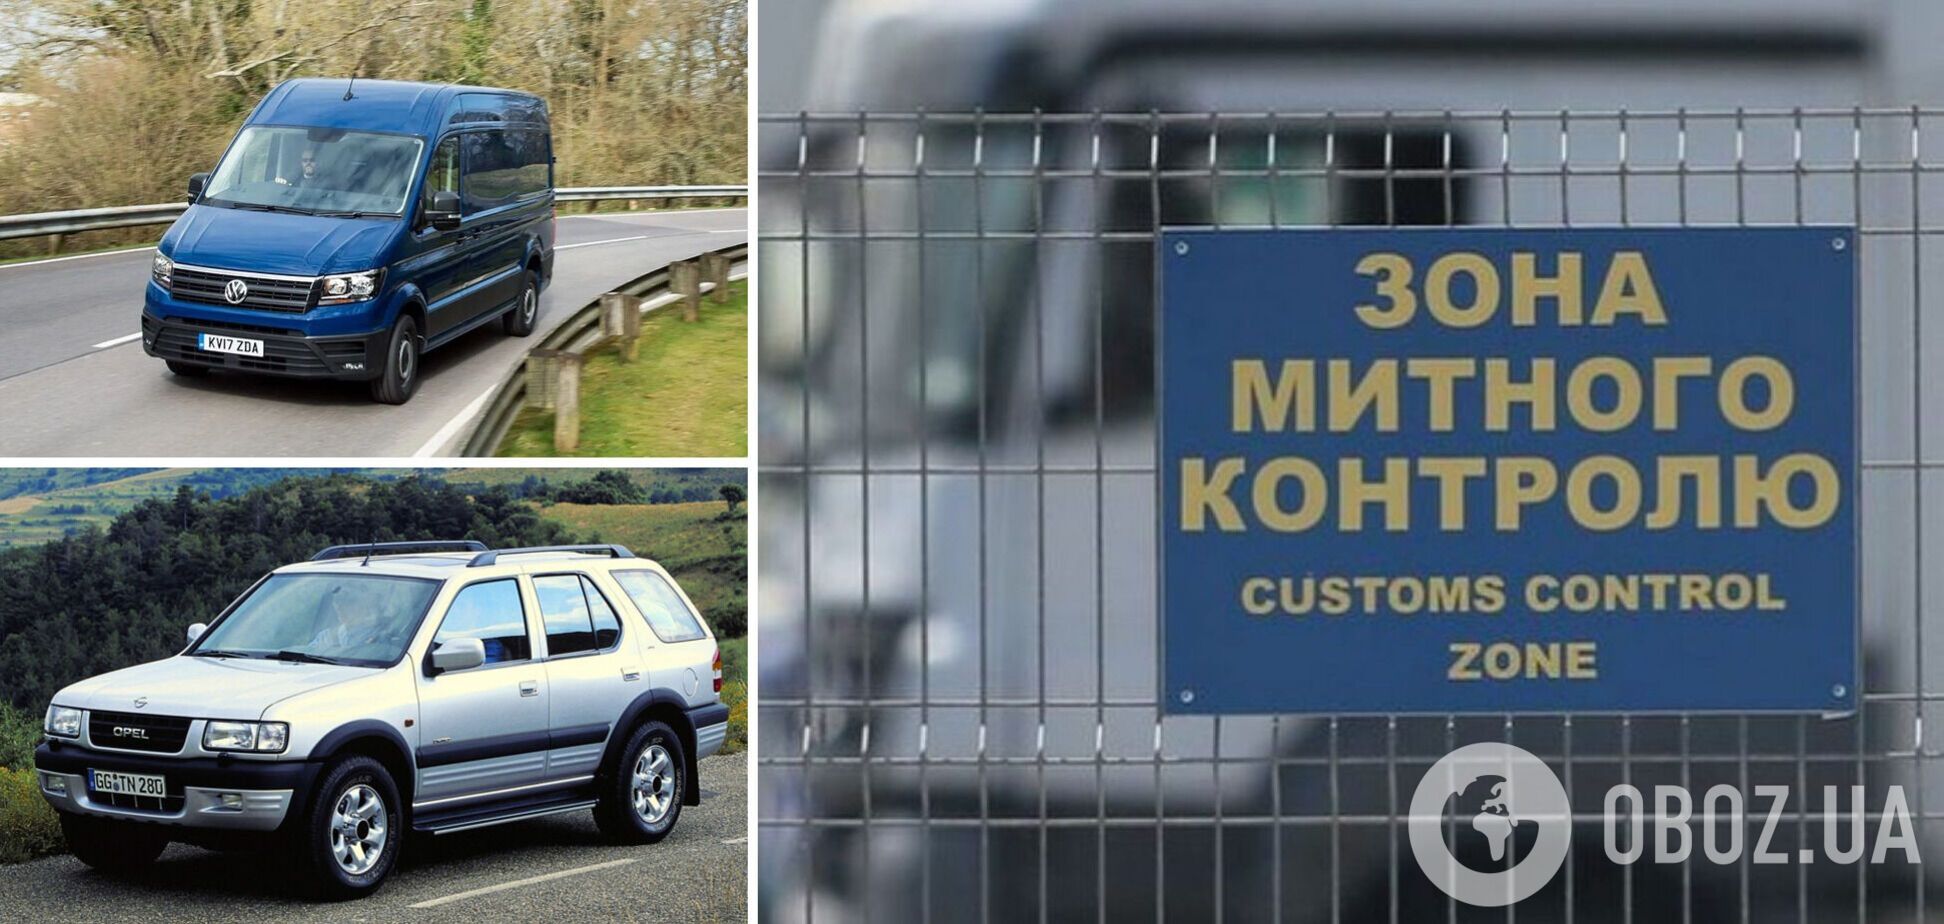 Украинцам упростили растаможку авто на еврономерах